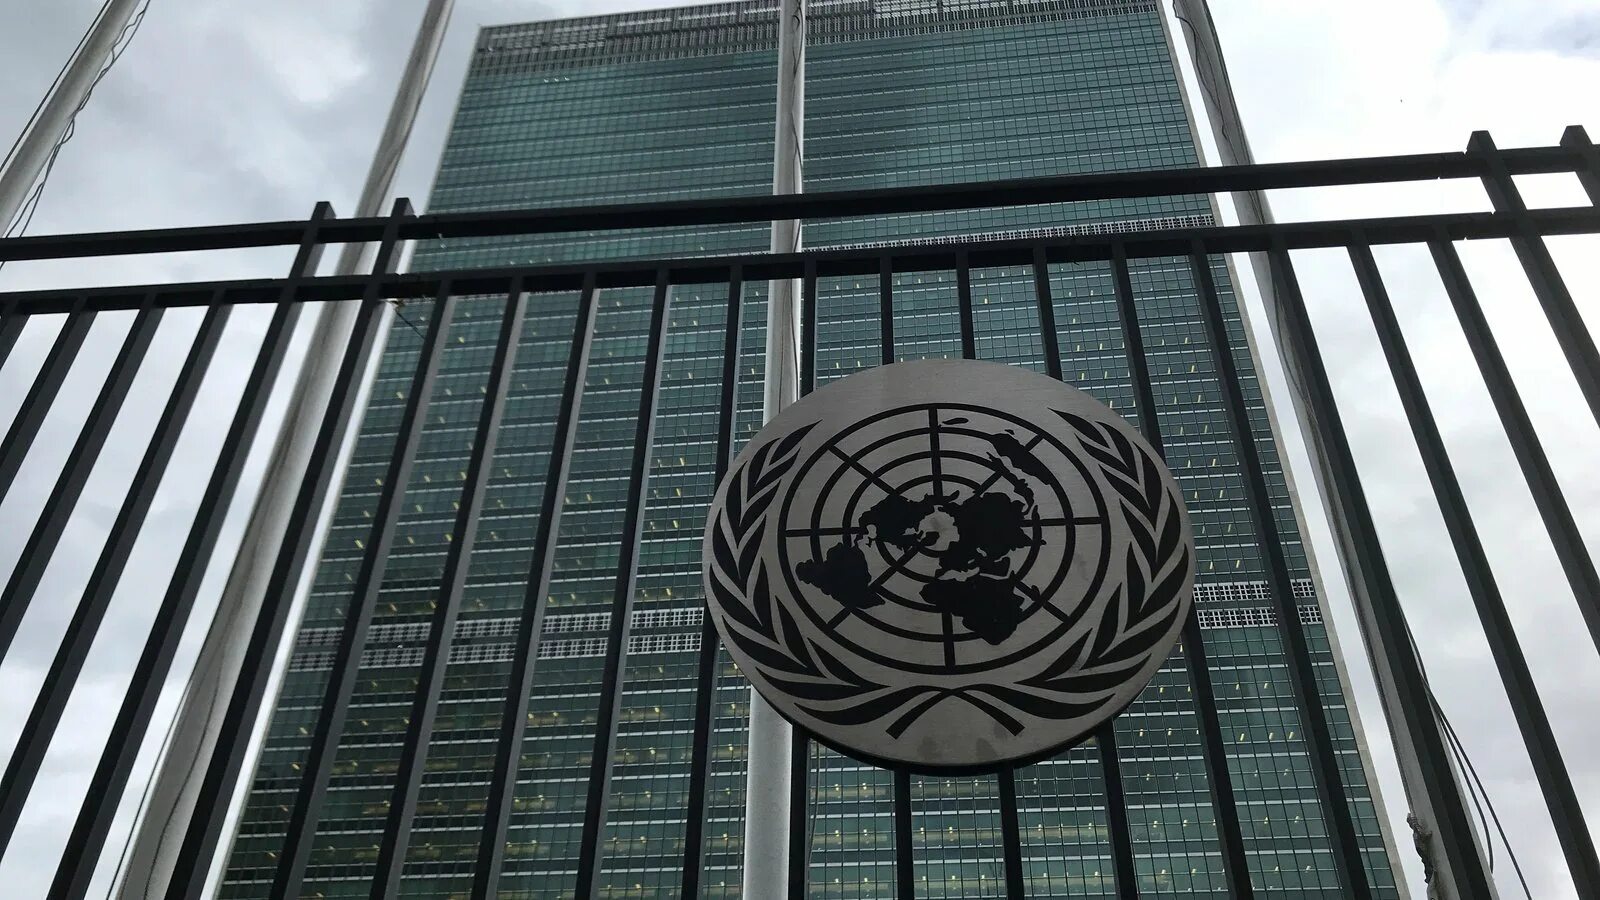 Оон центральный. Генеральная Ассамблея ООН Нью-Йорк. Здание Генеральной Ассамблеи ООН В Нью-Йорке. Генассамблея ООН здание. Зал ООН В Нью-Йорке.